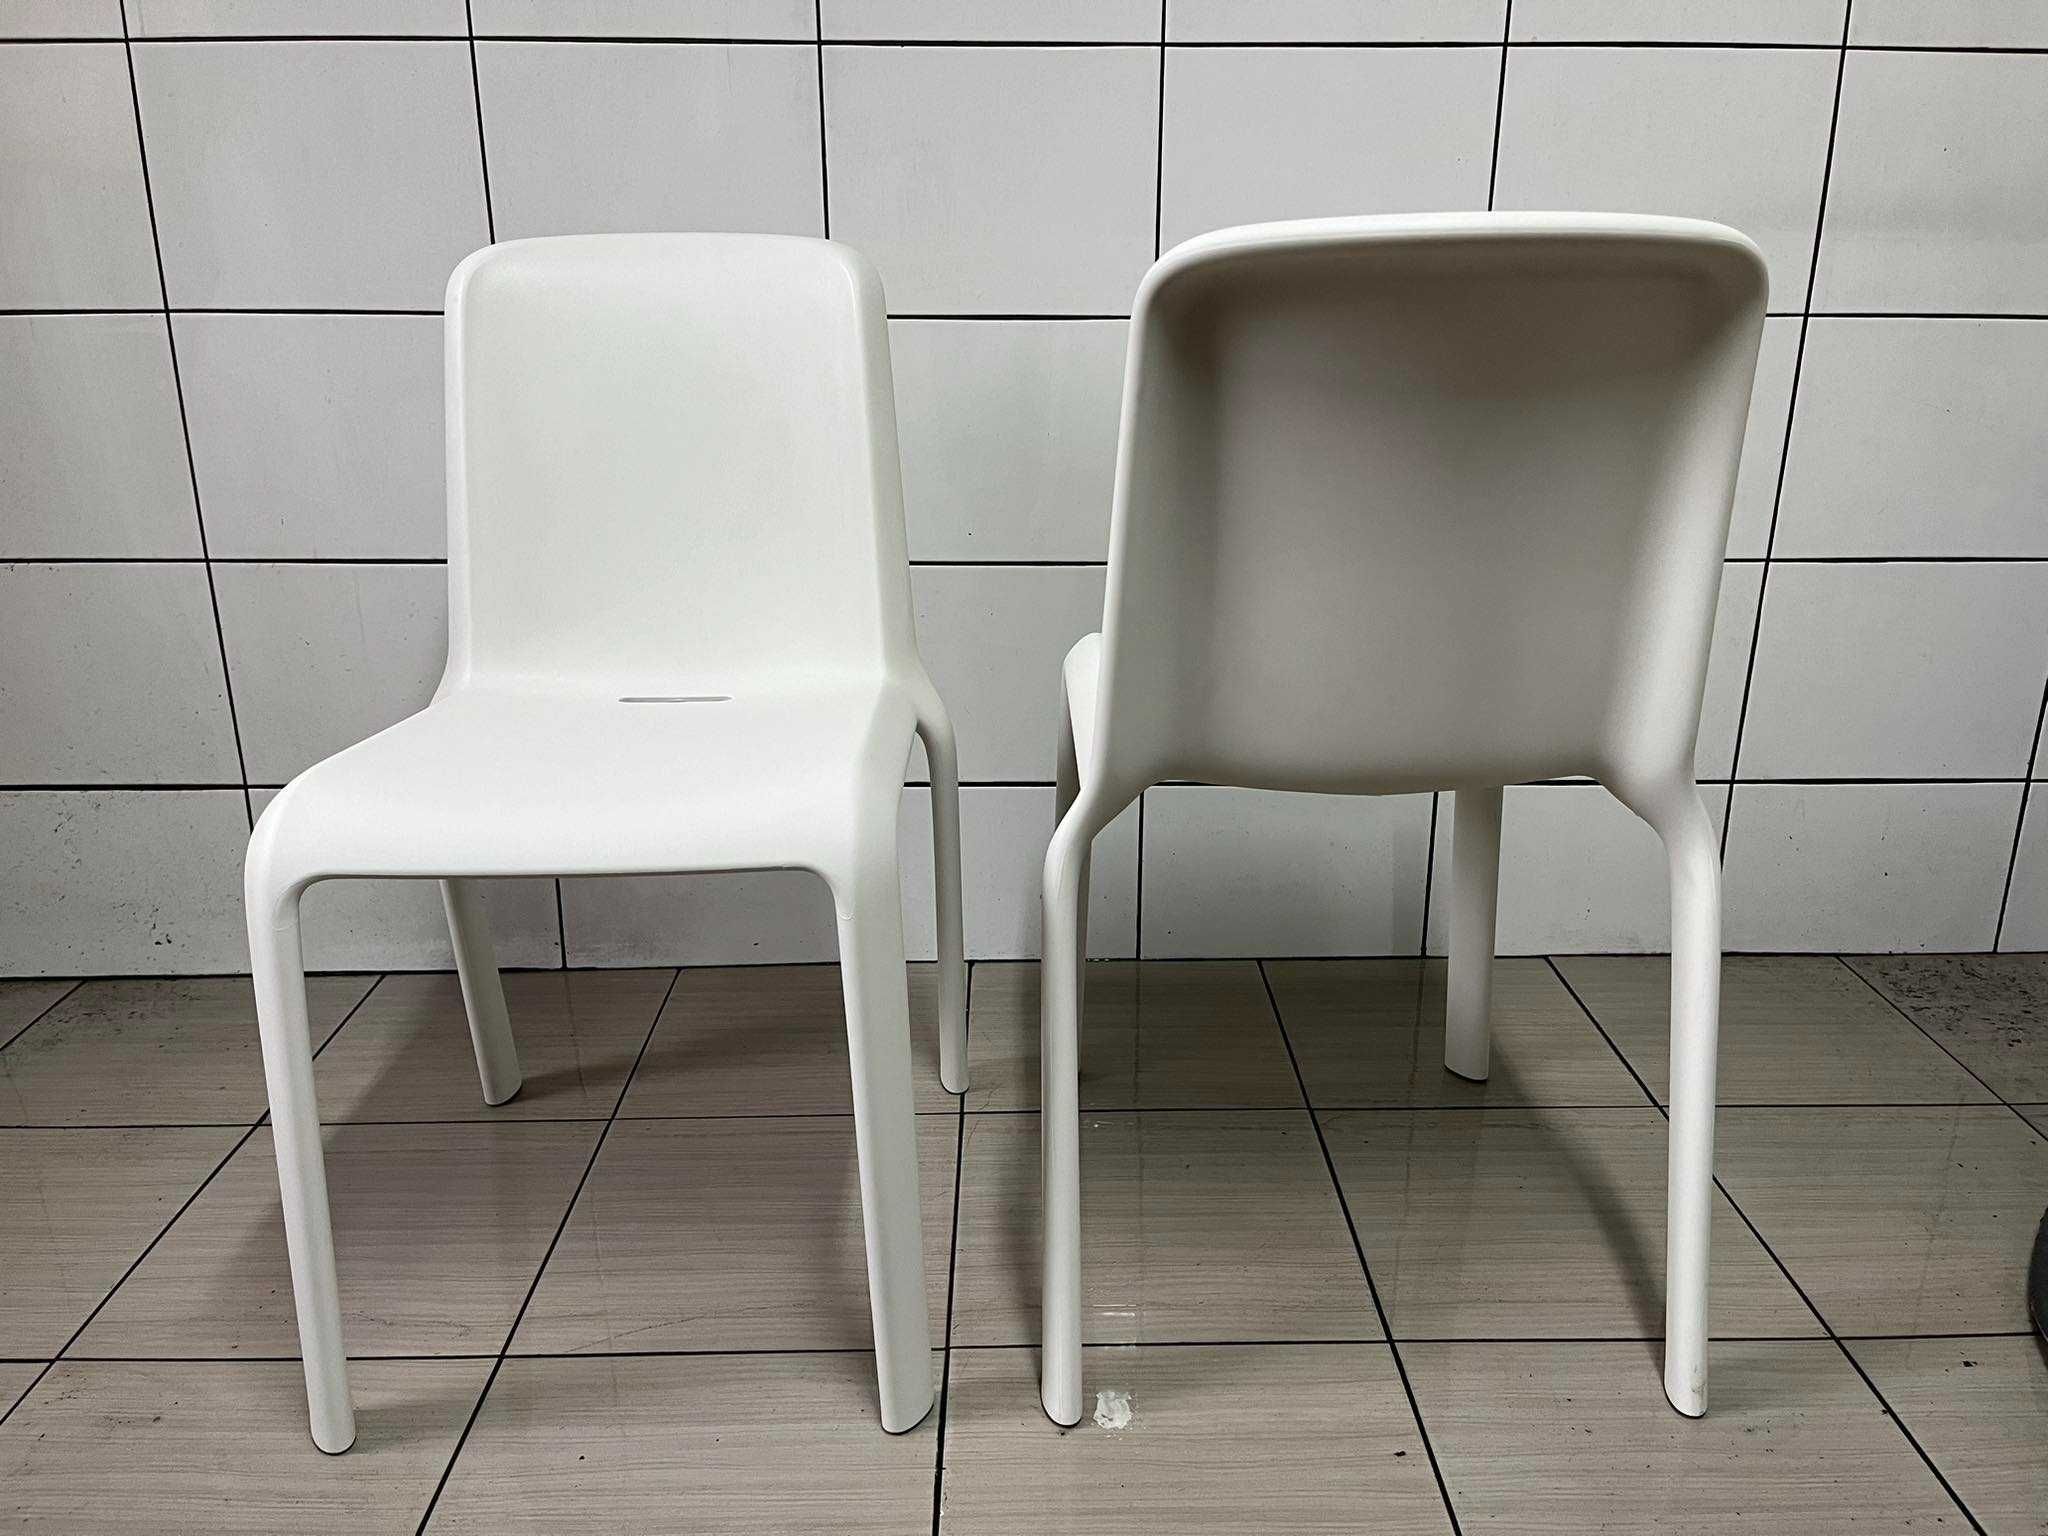 NOWE Krzesło biurowe kuchenne uniwersalne Pedrali Snow włoskie zobacz!